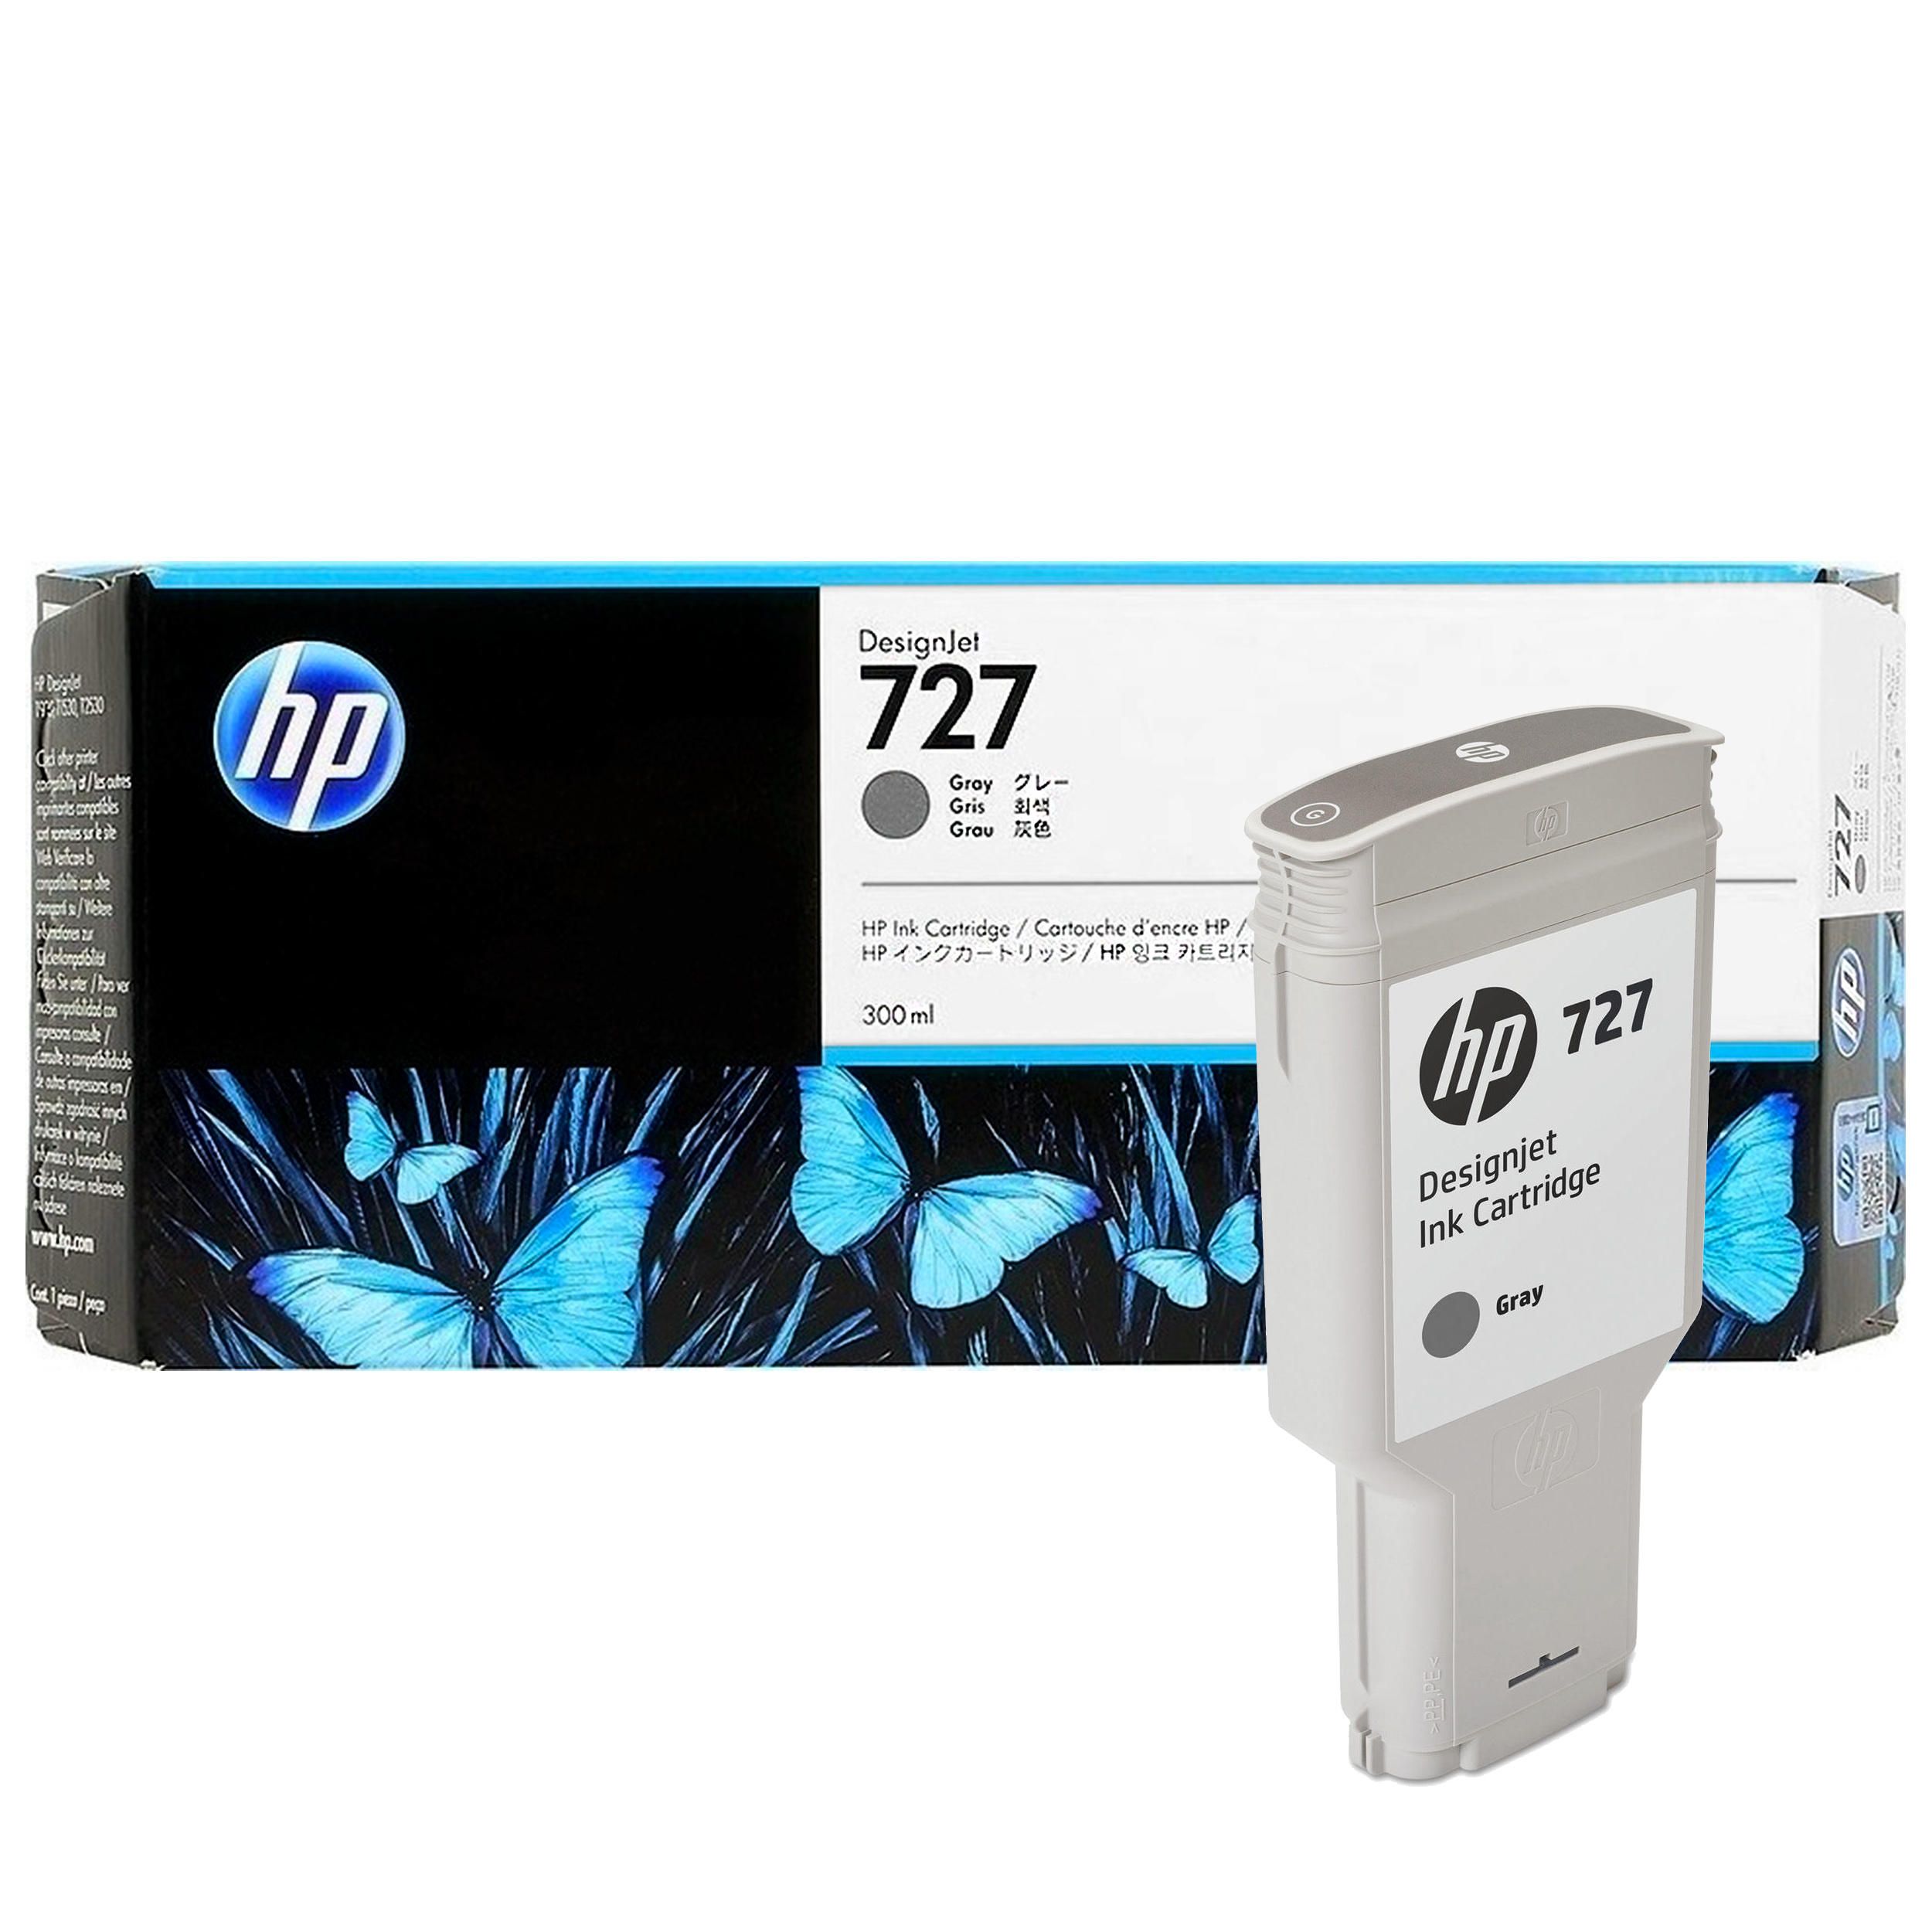 Картридж для струйного принтера HP 727 (F9J80A) серый, оригинал